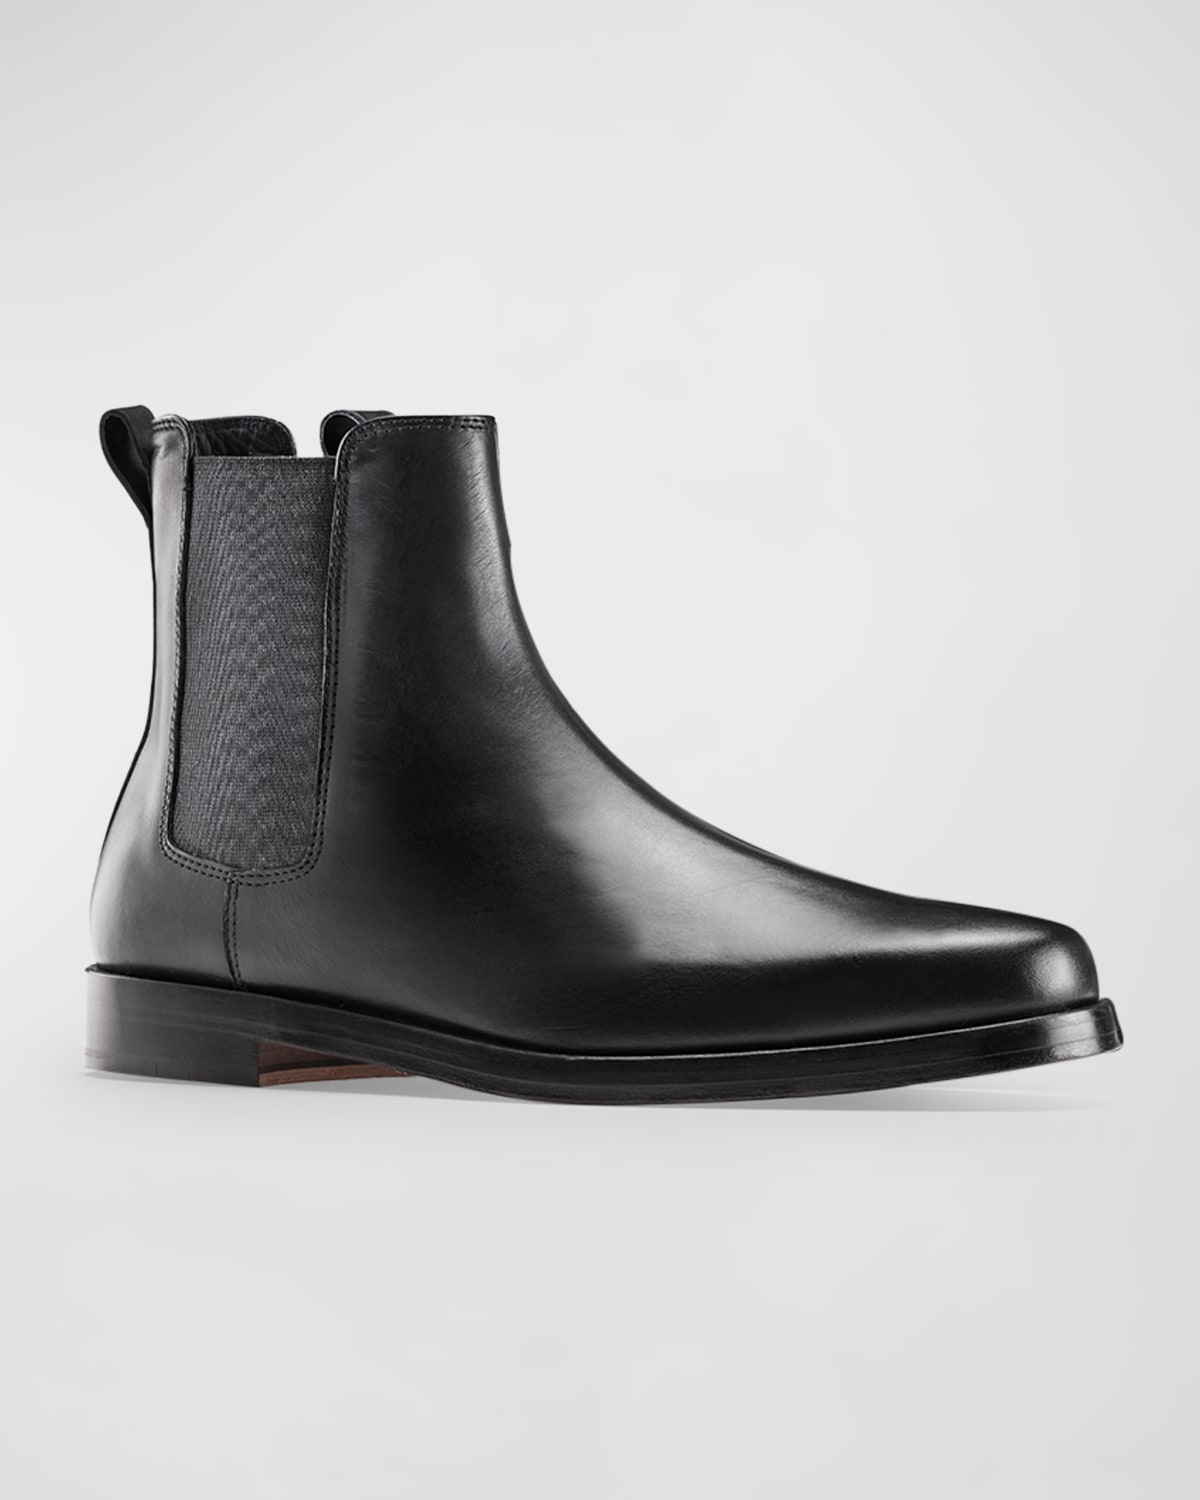 Magnanni Men's Caspe Double-Buckle Chelsea Boots | Neiman Marcus